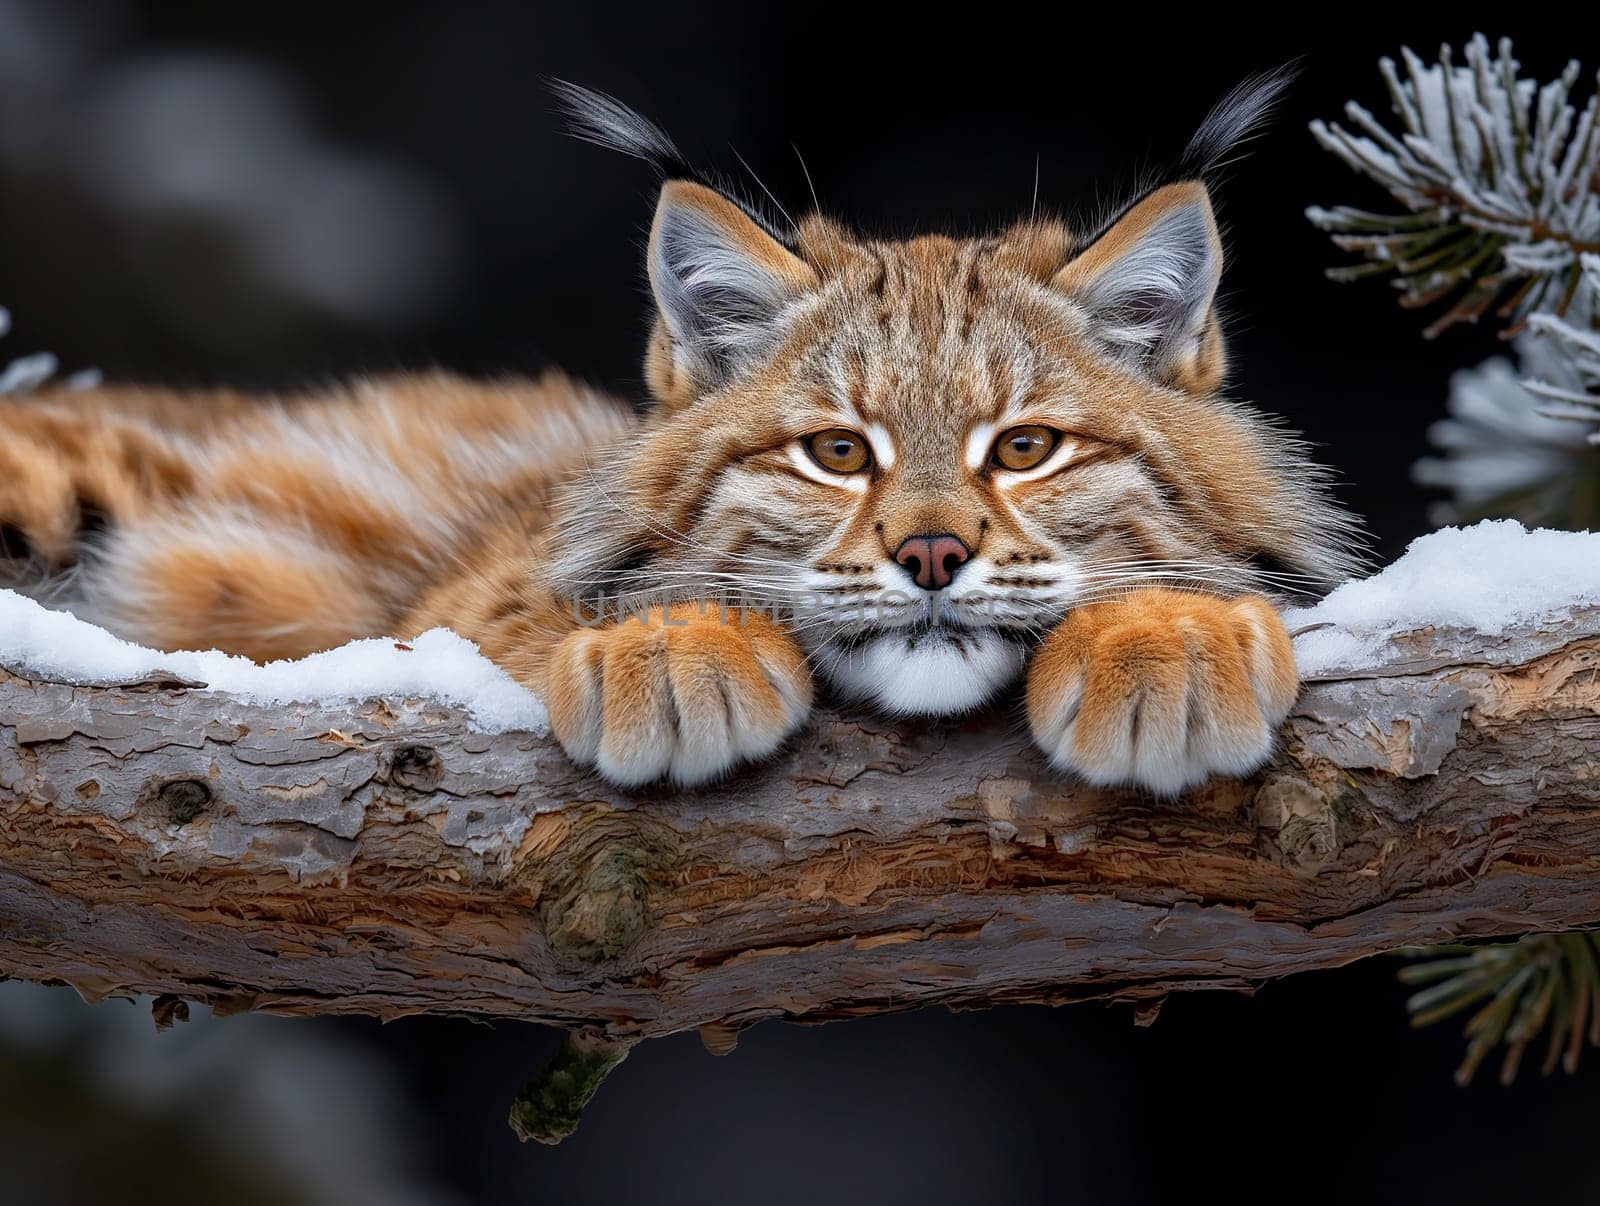 A wild eurasian lynx sleepy on a tree